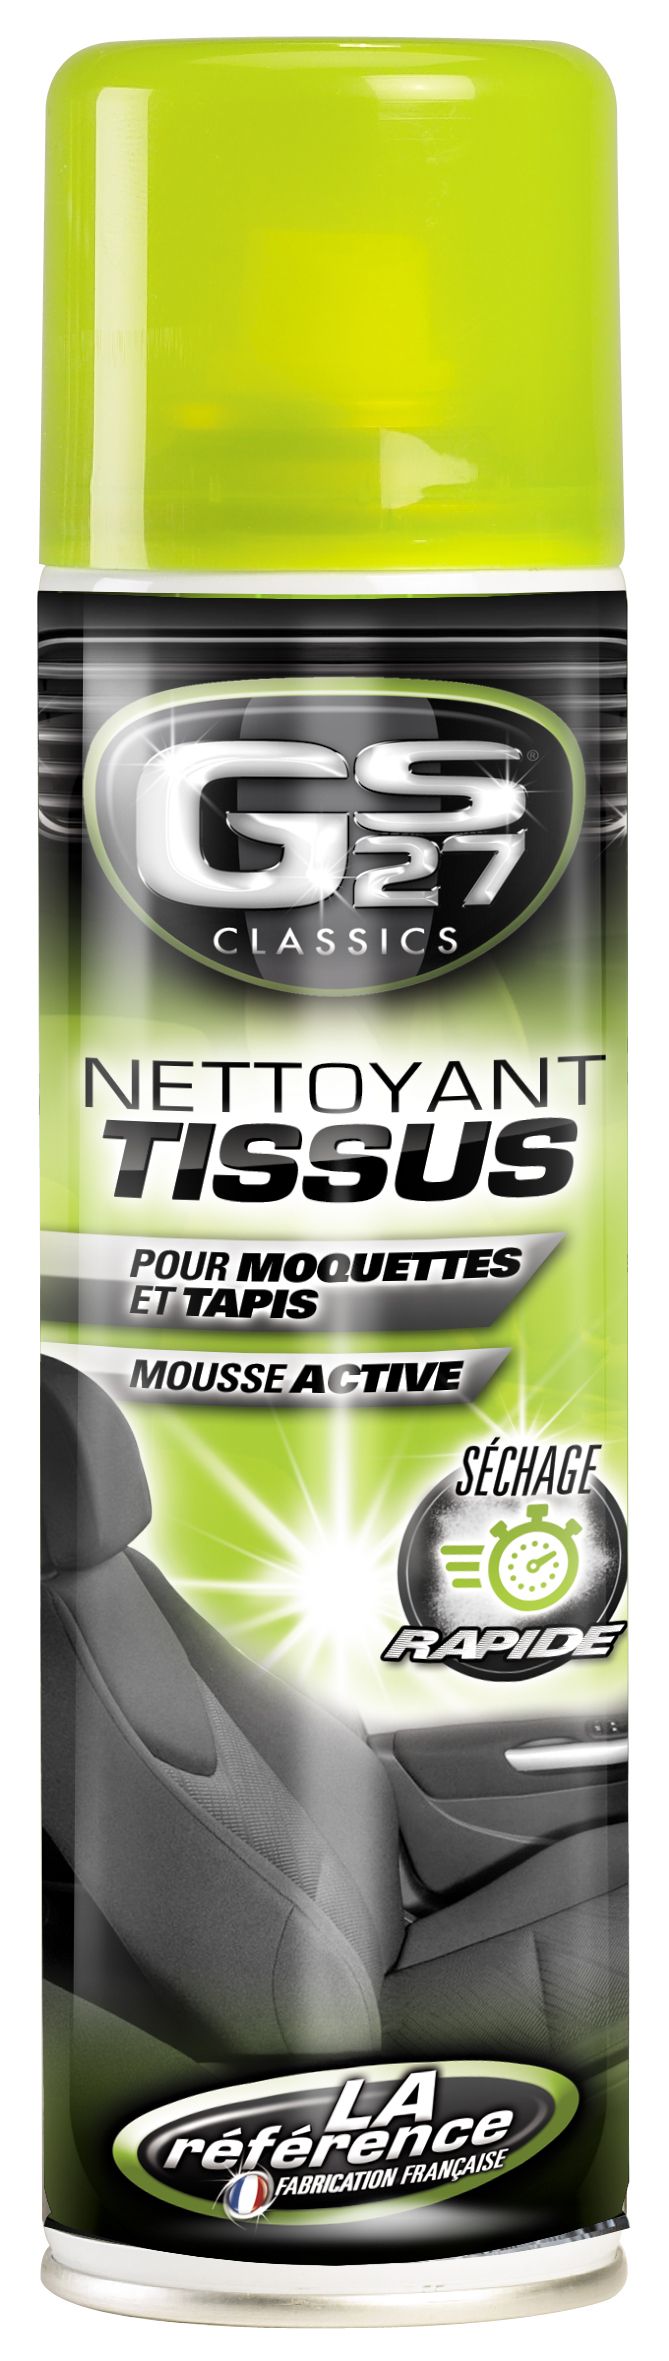 Nettoyant tissus et brosse GS27 400 ml - Feu Vert